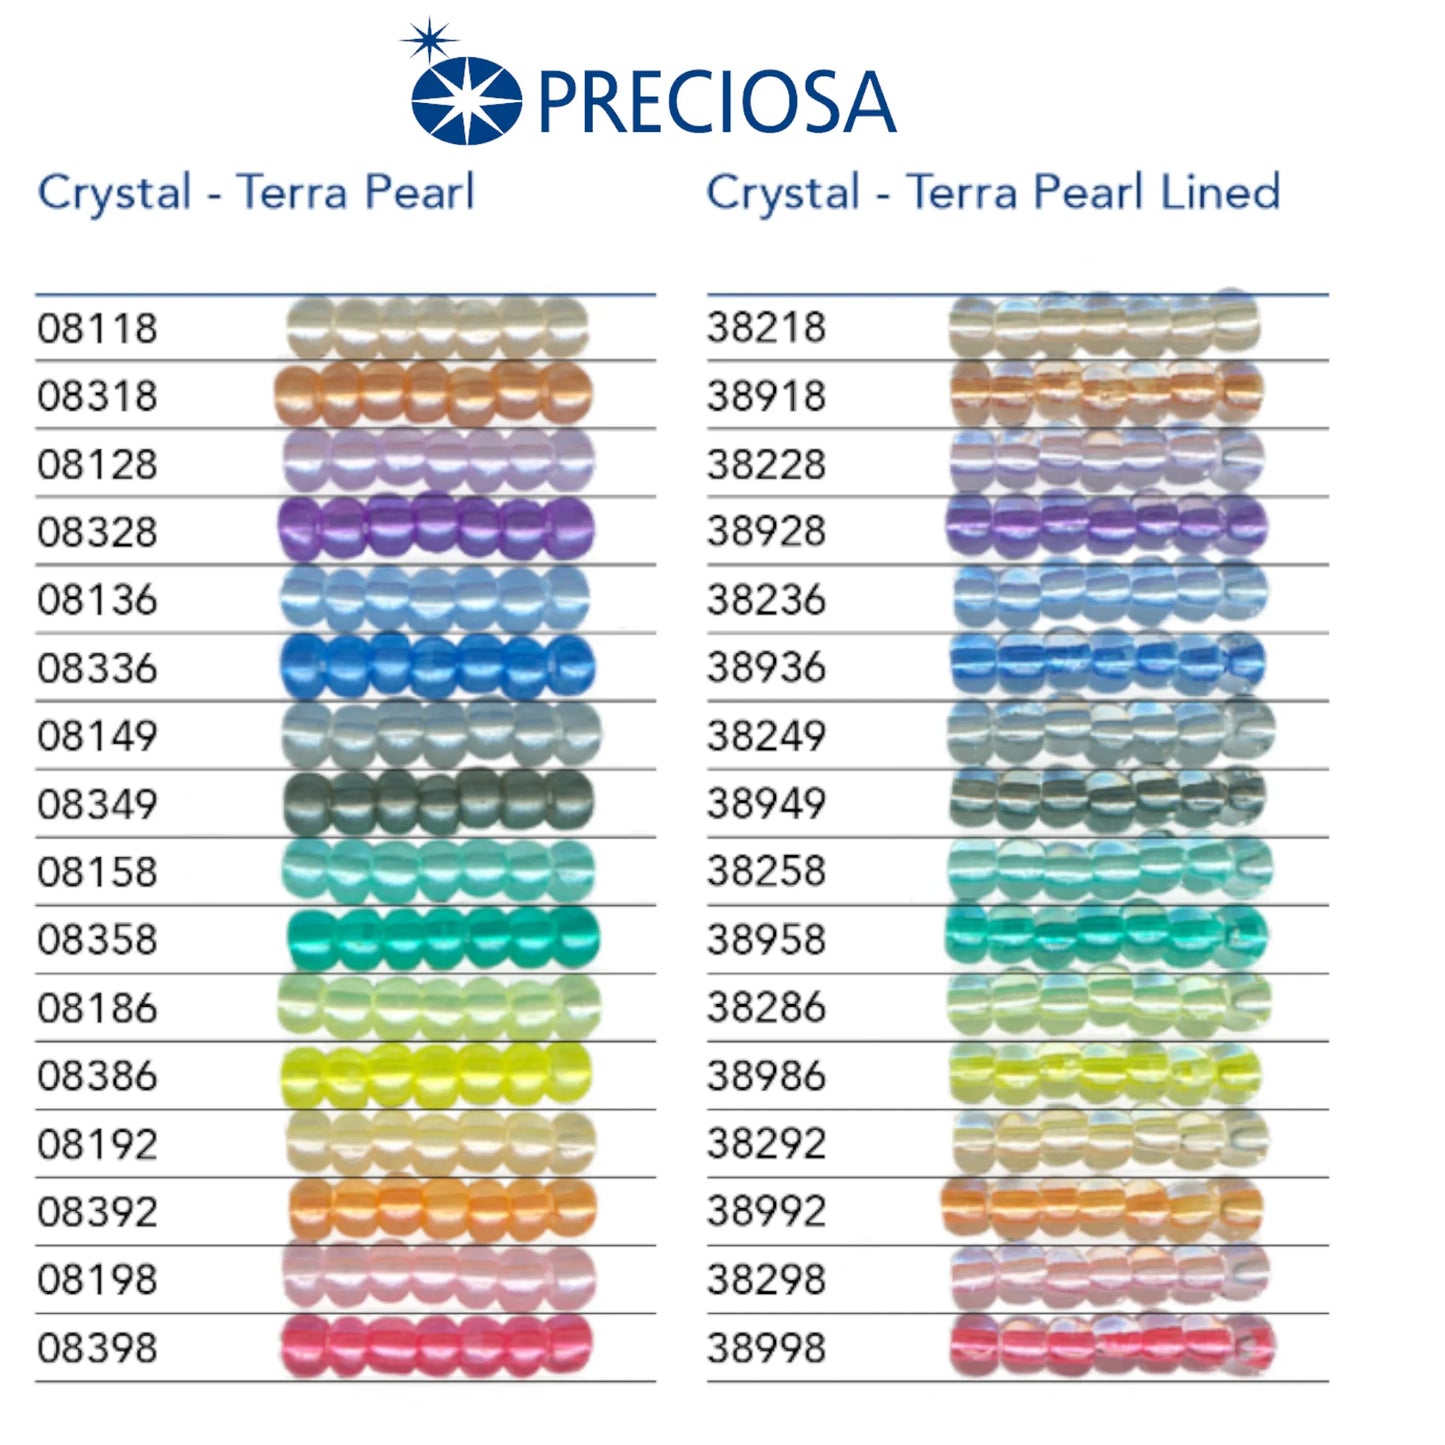 38986 Tschechische Rocailles PRECIOSA Rocailles 10/0 gelb. Kristall – Terra Pearl gefüttert.